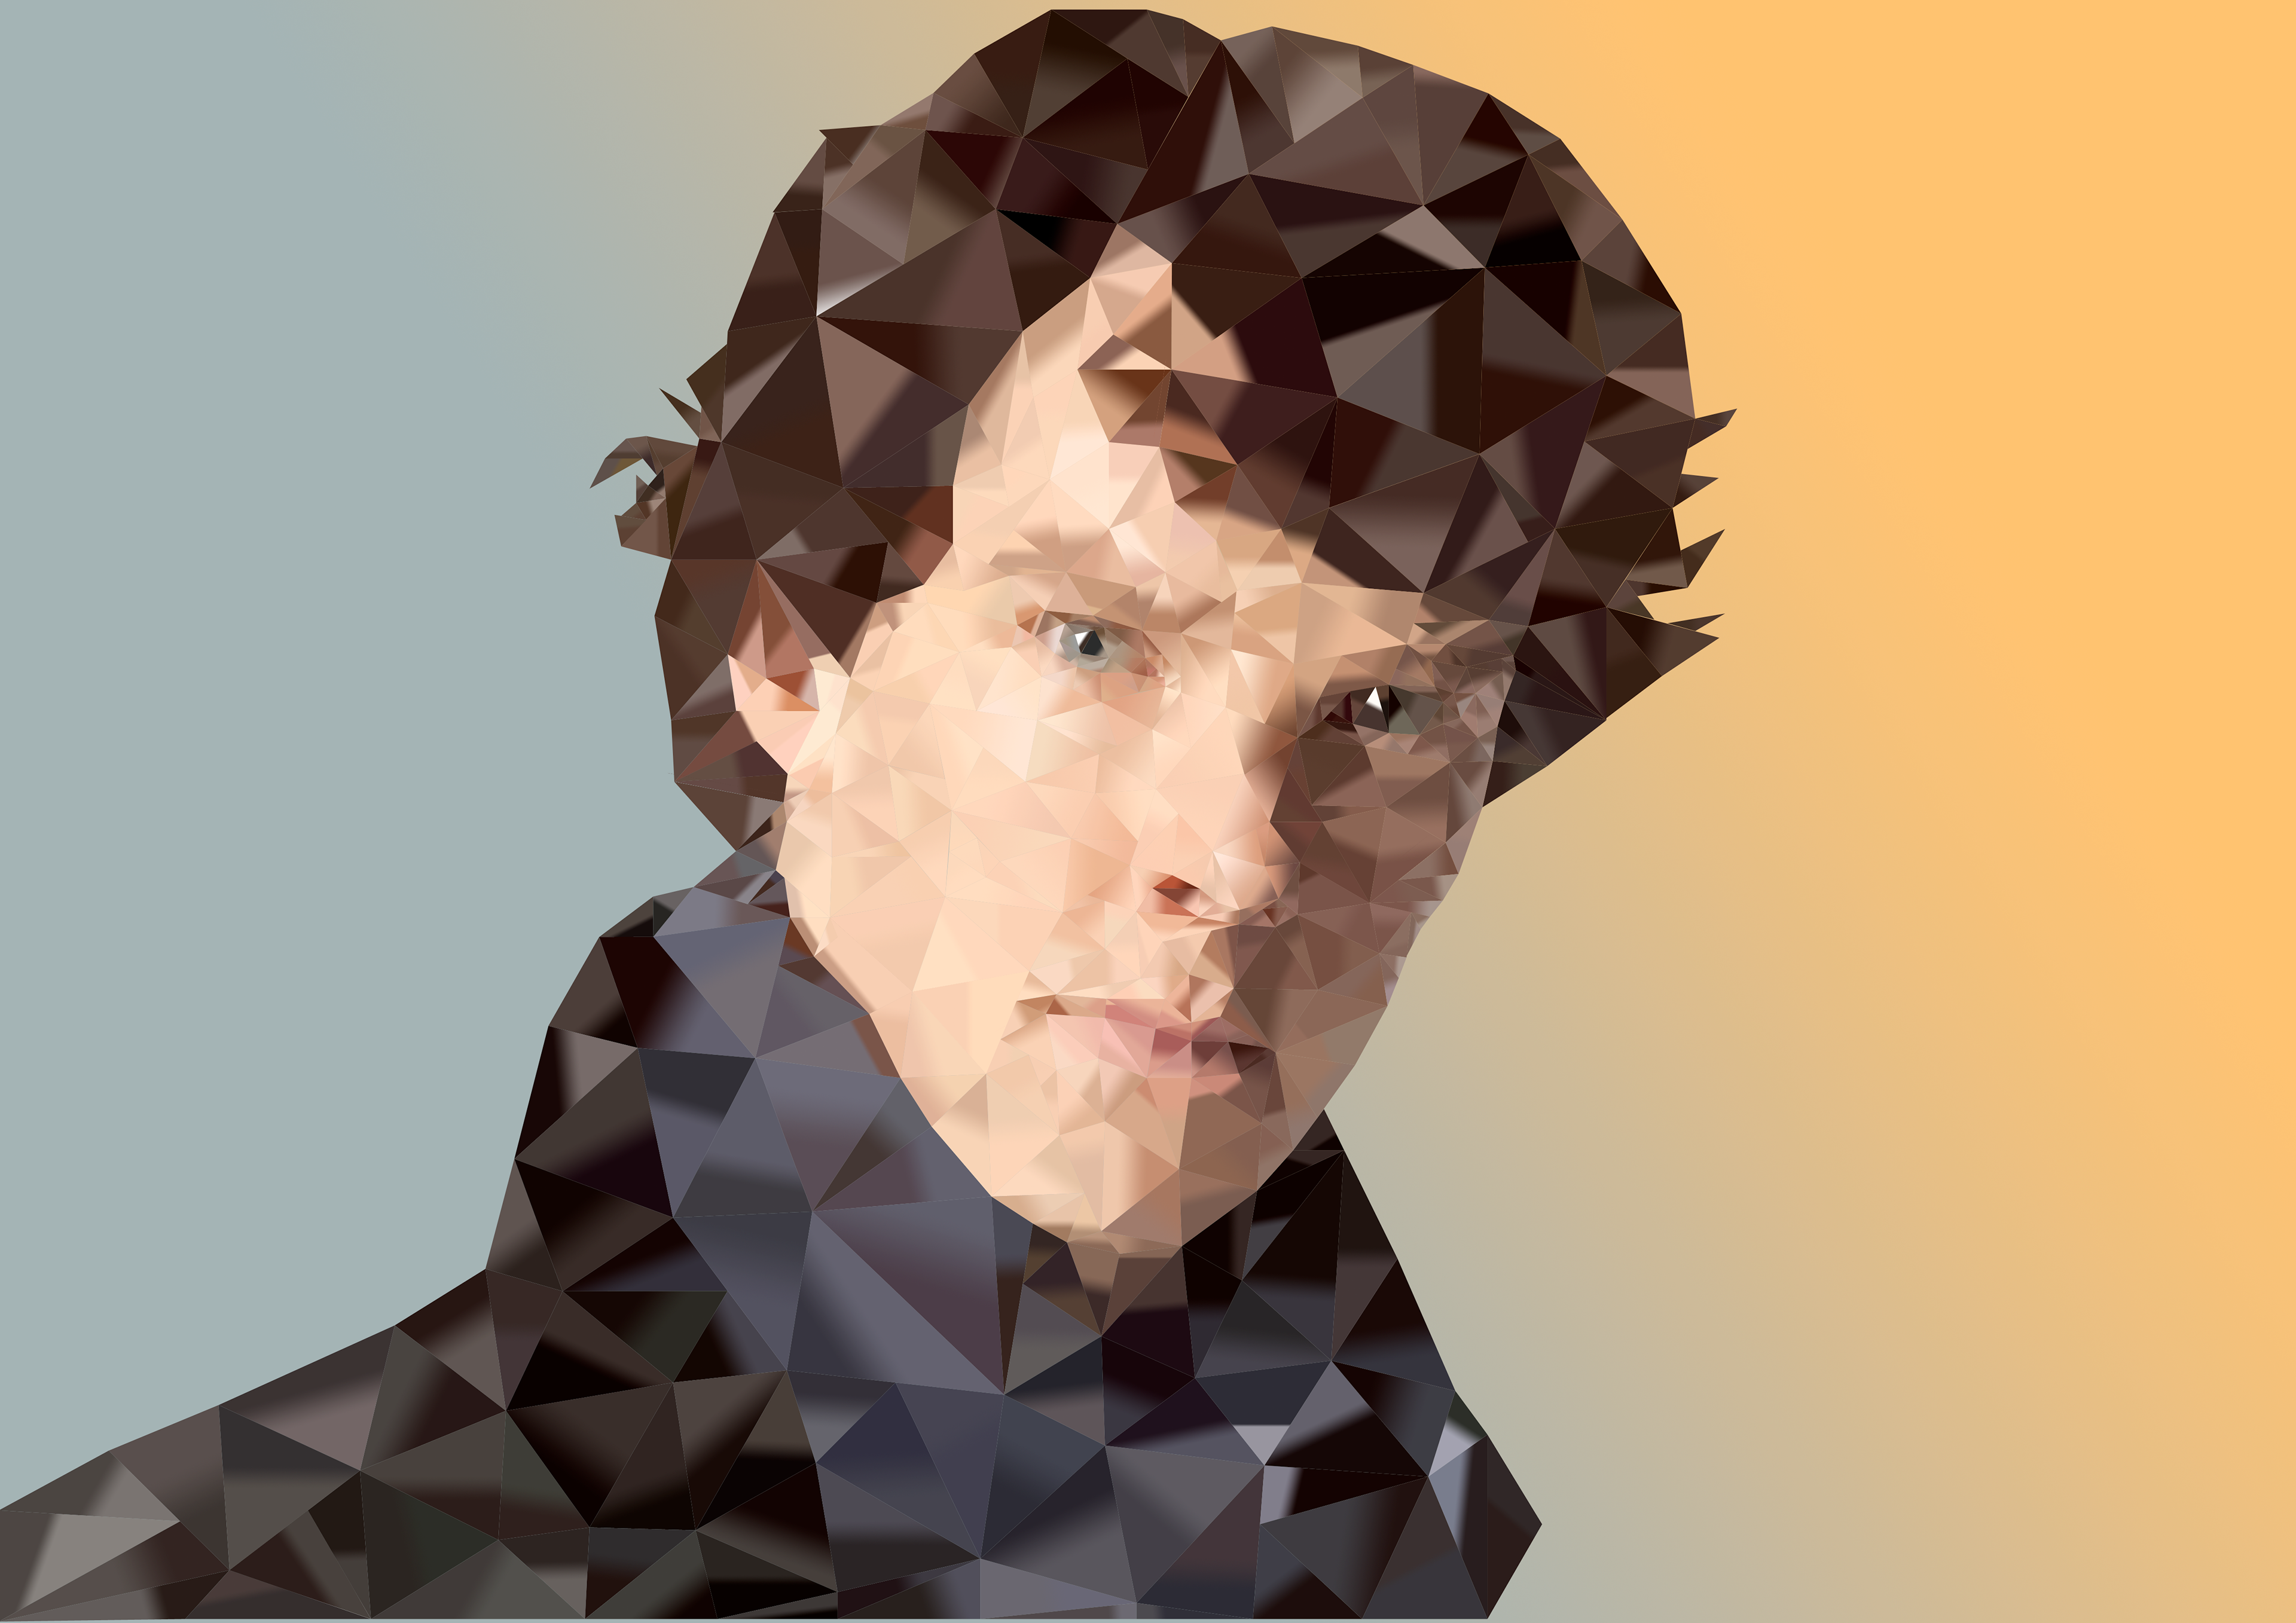 Полигональный портрет Тома Холланда